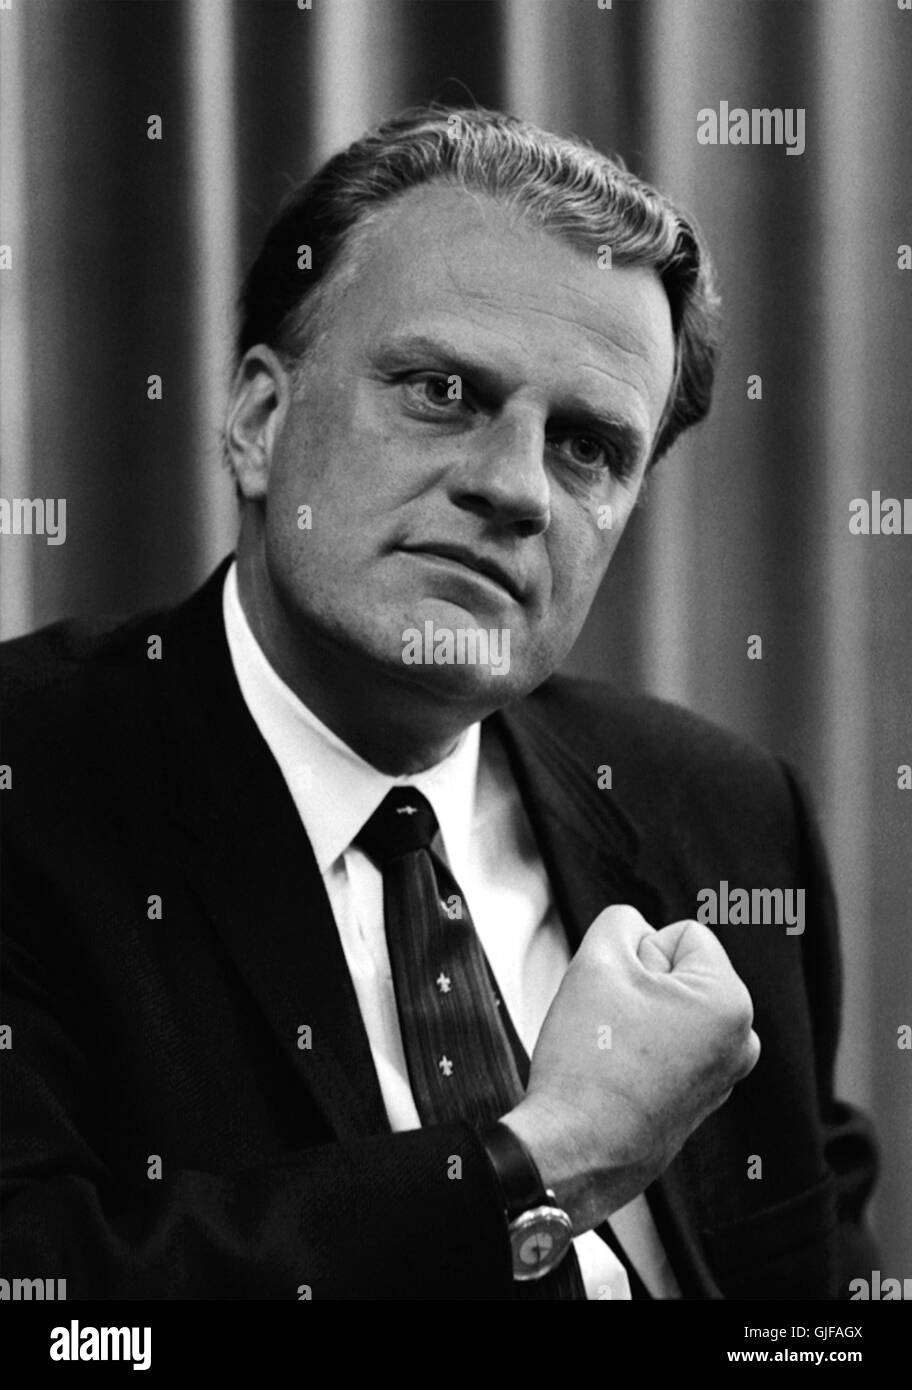 Billy Graham, Welt berühmten christlicher Evangelist, am 11. April 1966. Foto von Warren K. Leffler. Stockfoto